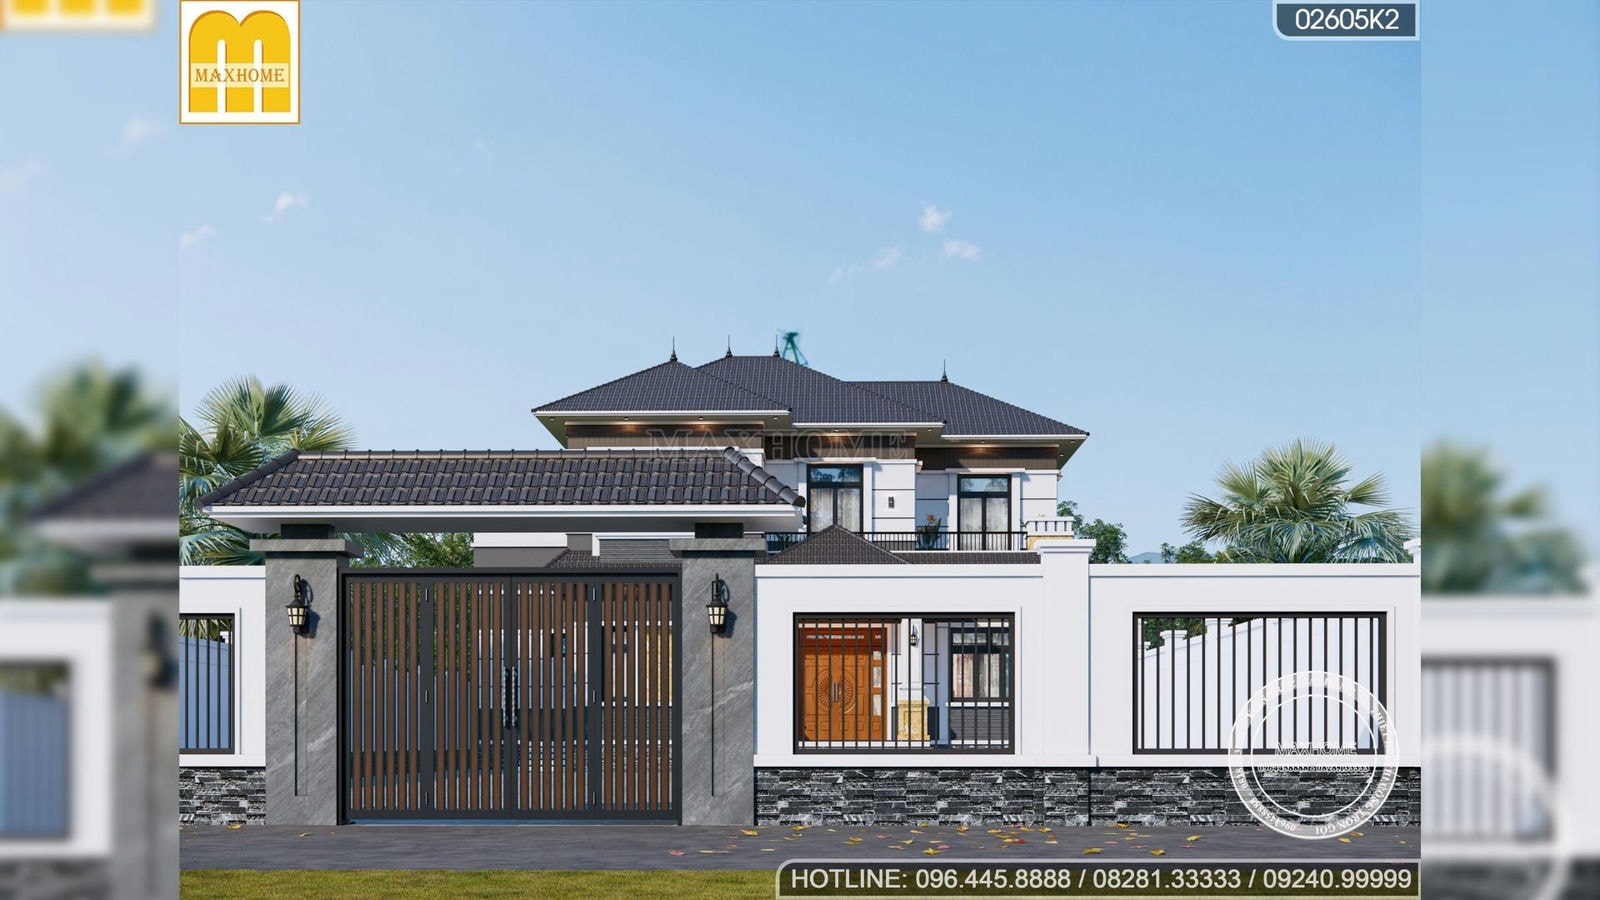 Mẫu nhà mái Nhật 2 tầng HIỆN ĐẠI đẹp hoành tráng ở Vĩnh Phúc | MH02020